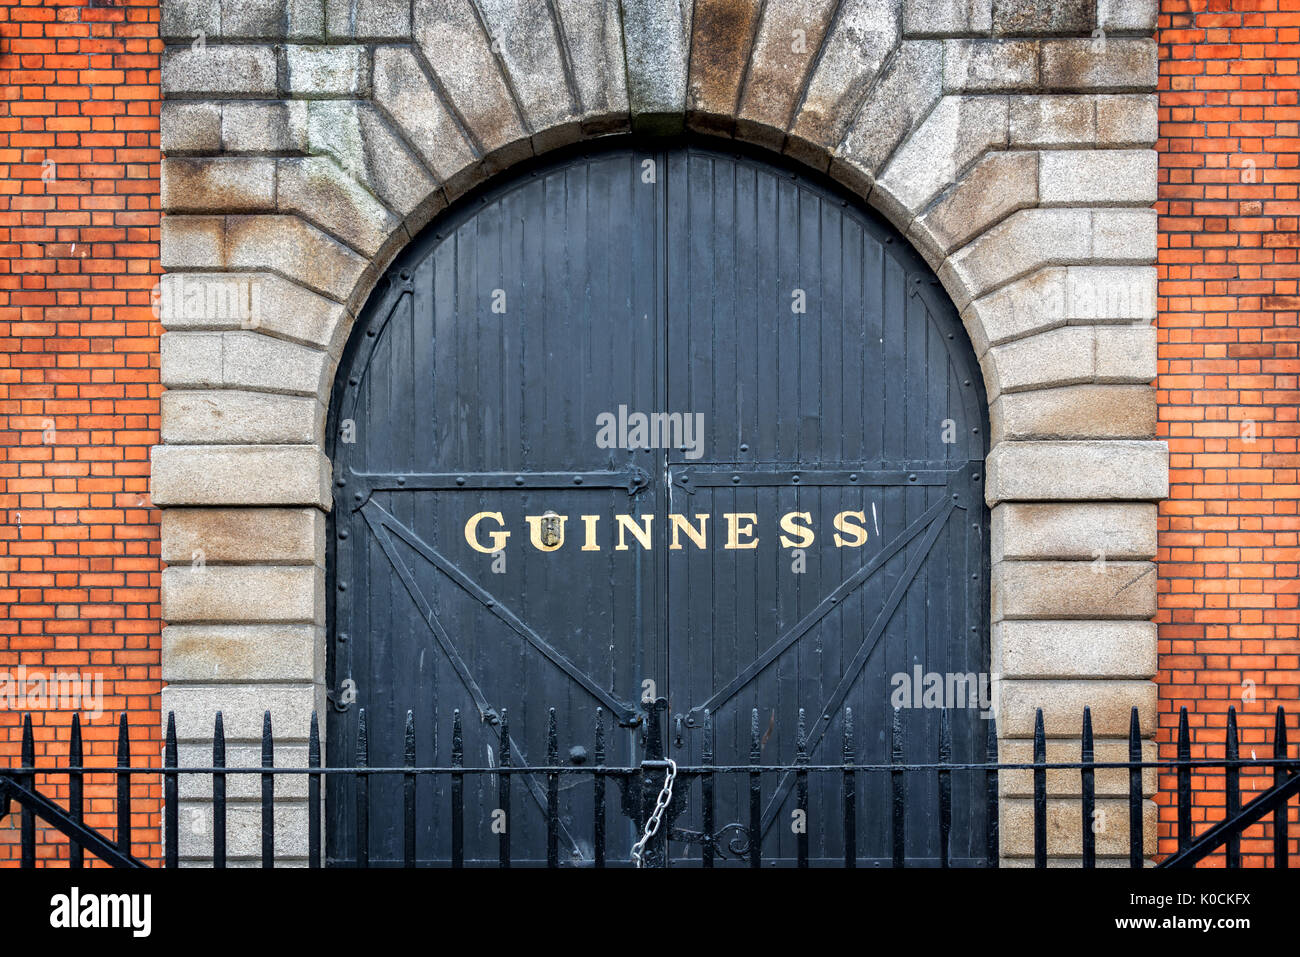 Dublino, Irlanda - 14 agosto: porta presso il Magazzino Guinness Brewery. Il Magazzino Guinness è una popolare attrazione turistica di Dublino Foto Stock